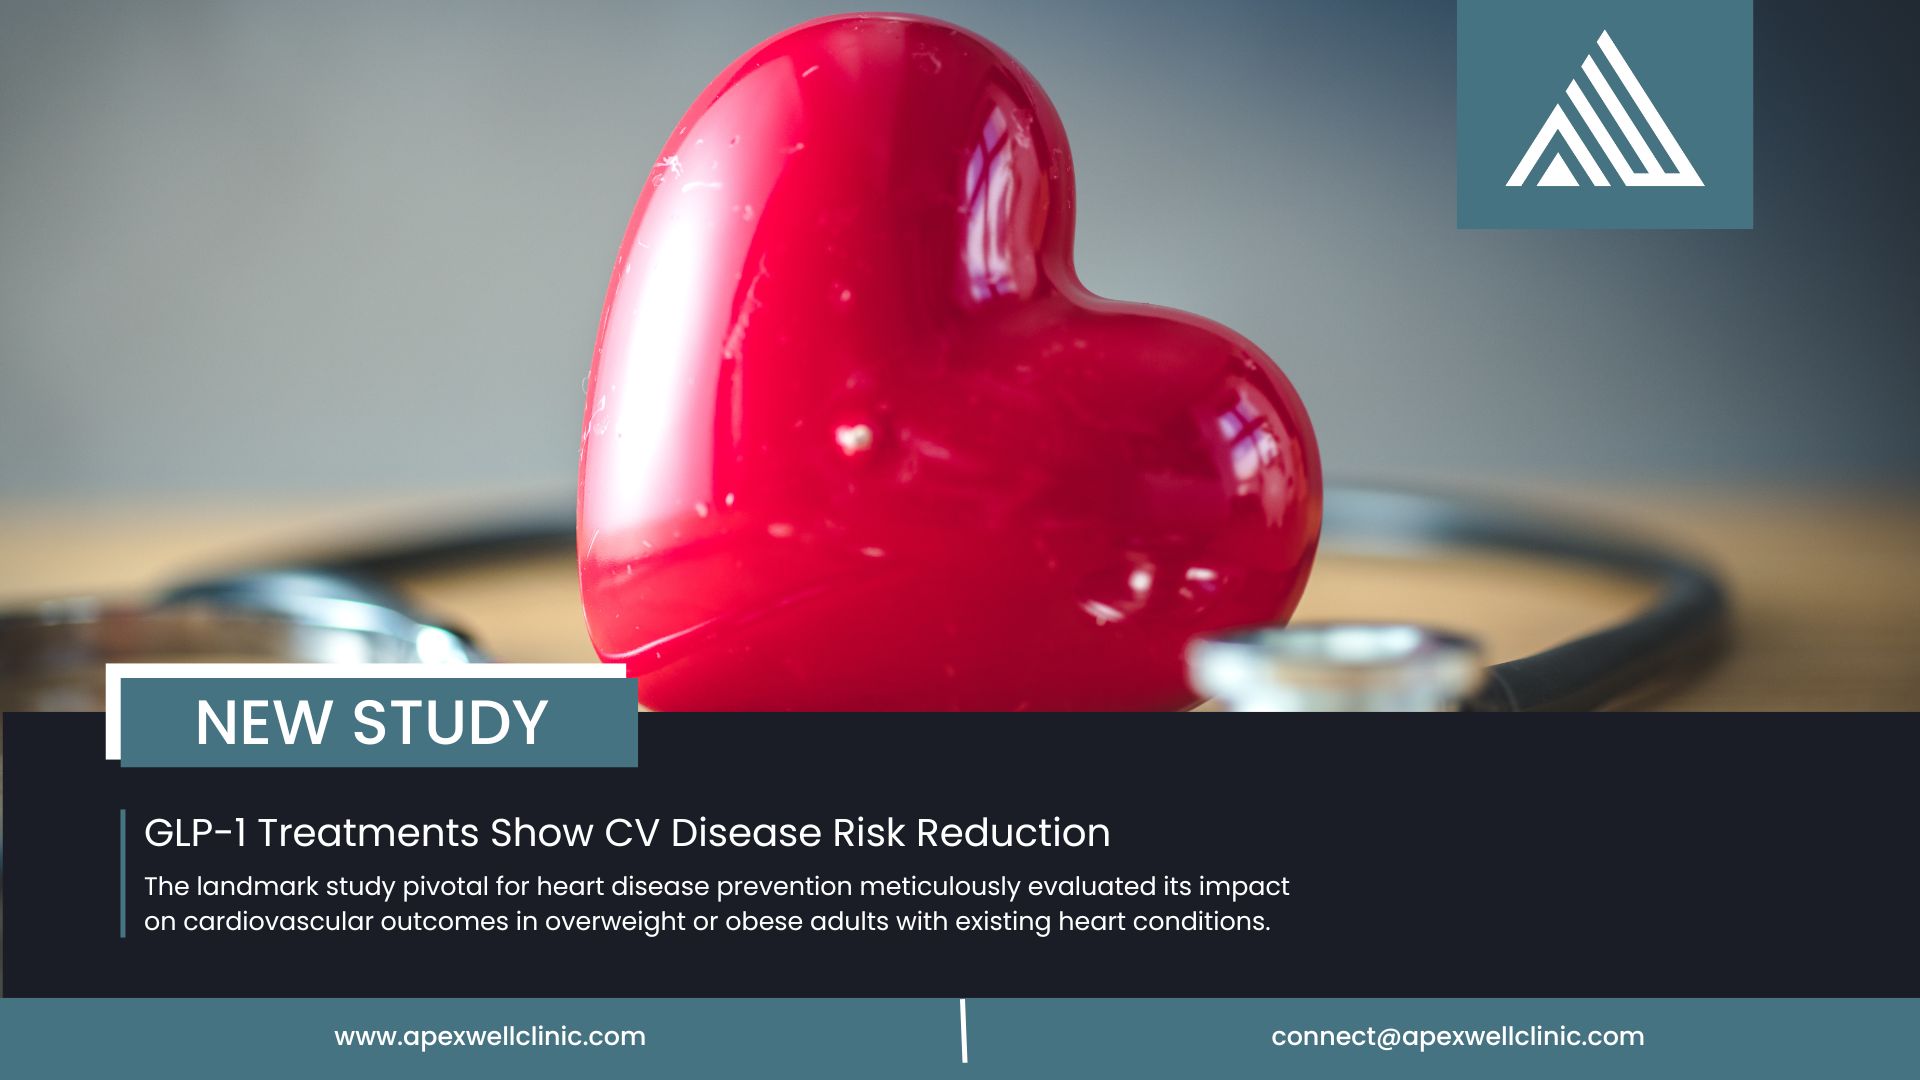 New GLP-1 Study for CV Risk